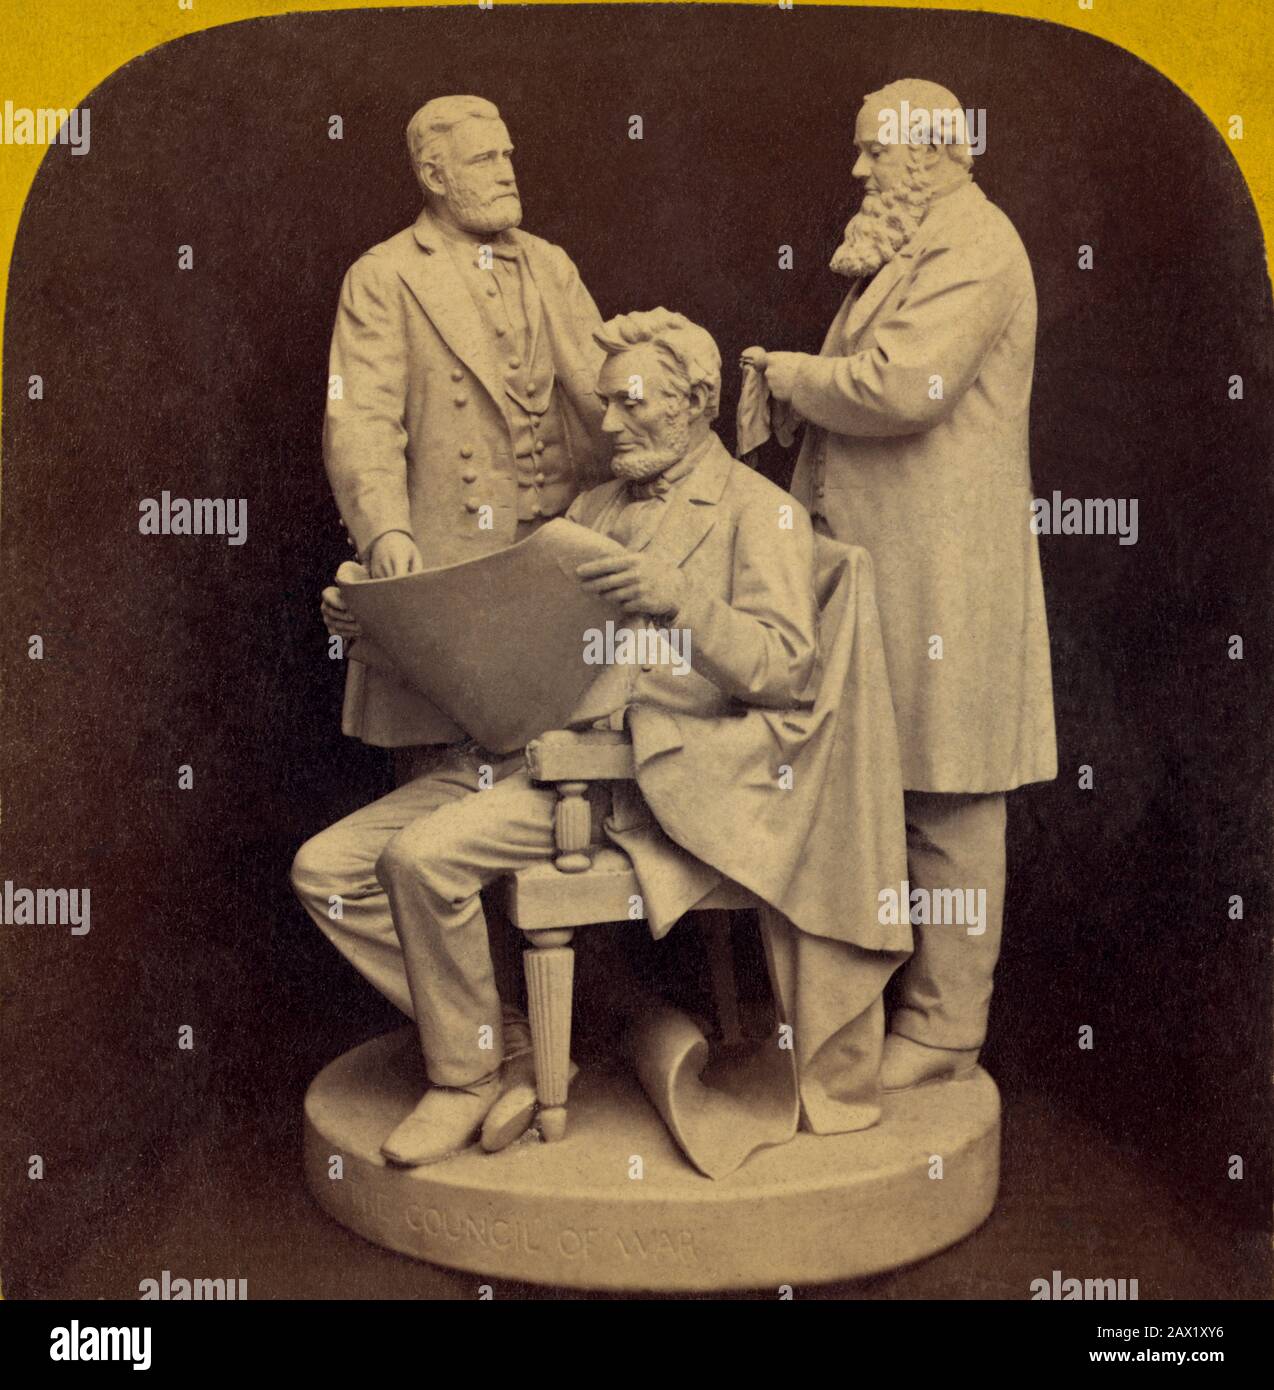 1868 , États-Unis : Le président des États-Unis ABRAHAM LINCOLN ( 1809 - 1865 ). Sculpture ' LE CONSEIL DE GUERRE ' d'Abraham Lincoln , Ulysses S. Grant et Secrétaire de guerre Edwin M. Stanton dans un groupement. Sculpture de John ROGERS ( 1829 - 1904 ). - Presidente della Repubblica - Stati Uniti - USA - ritratto - portrait - - Abramo - ARTS - ARTE - SCULTORE - SCULPTURE - SCULPTURE - STATUA - STATUE - monument - monumento - sculpteur --- Archivio GBB Banque D'Images